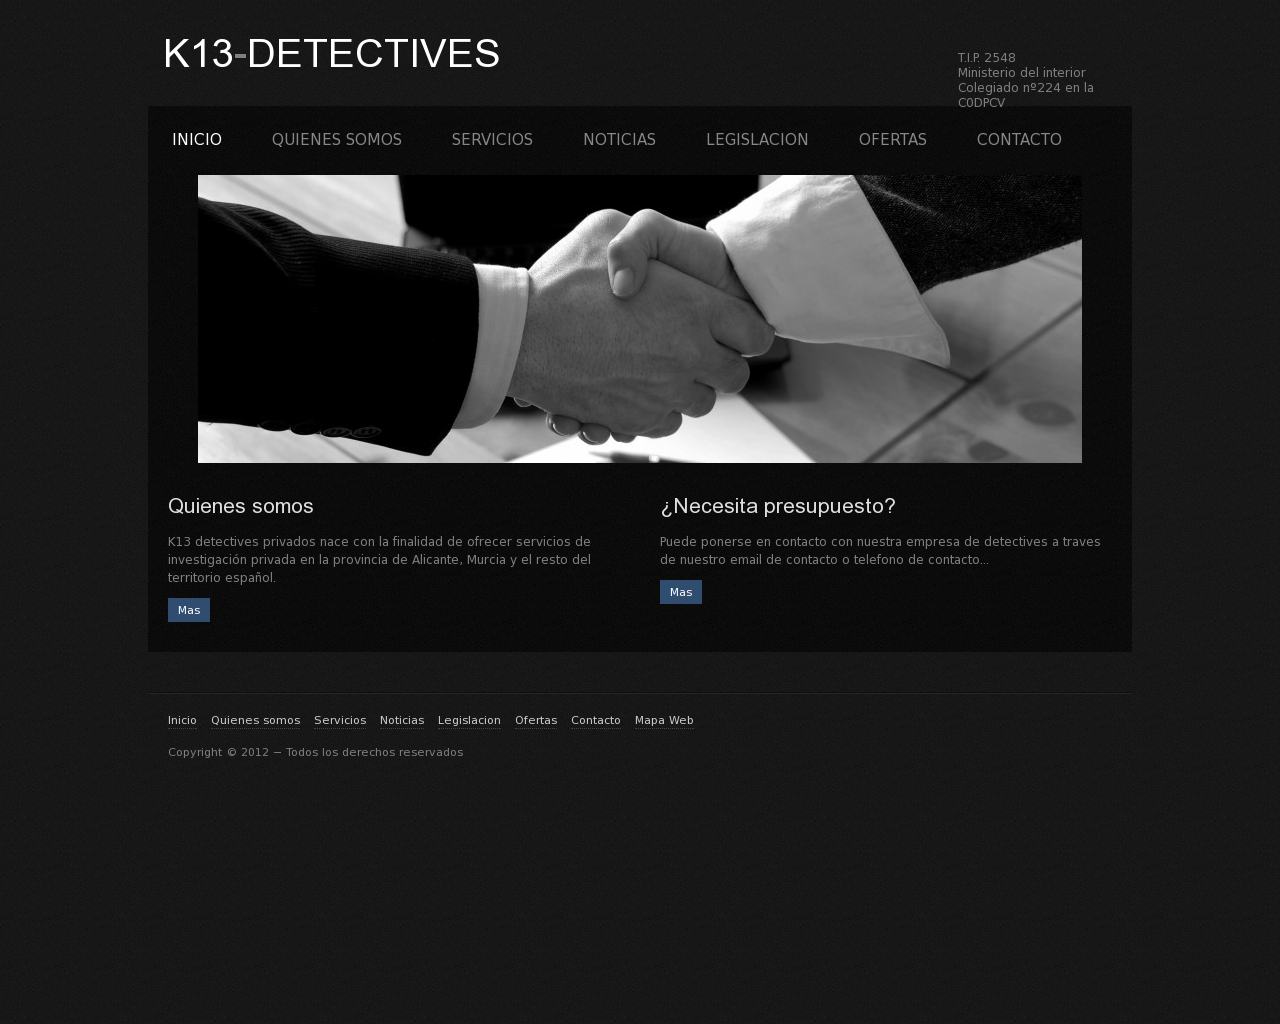 El sitio de la imagen k13detectives.es en 1280x1024